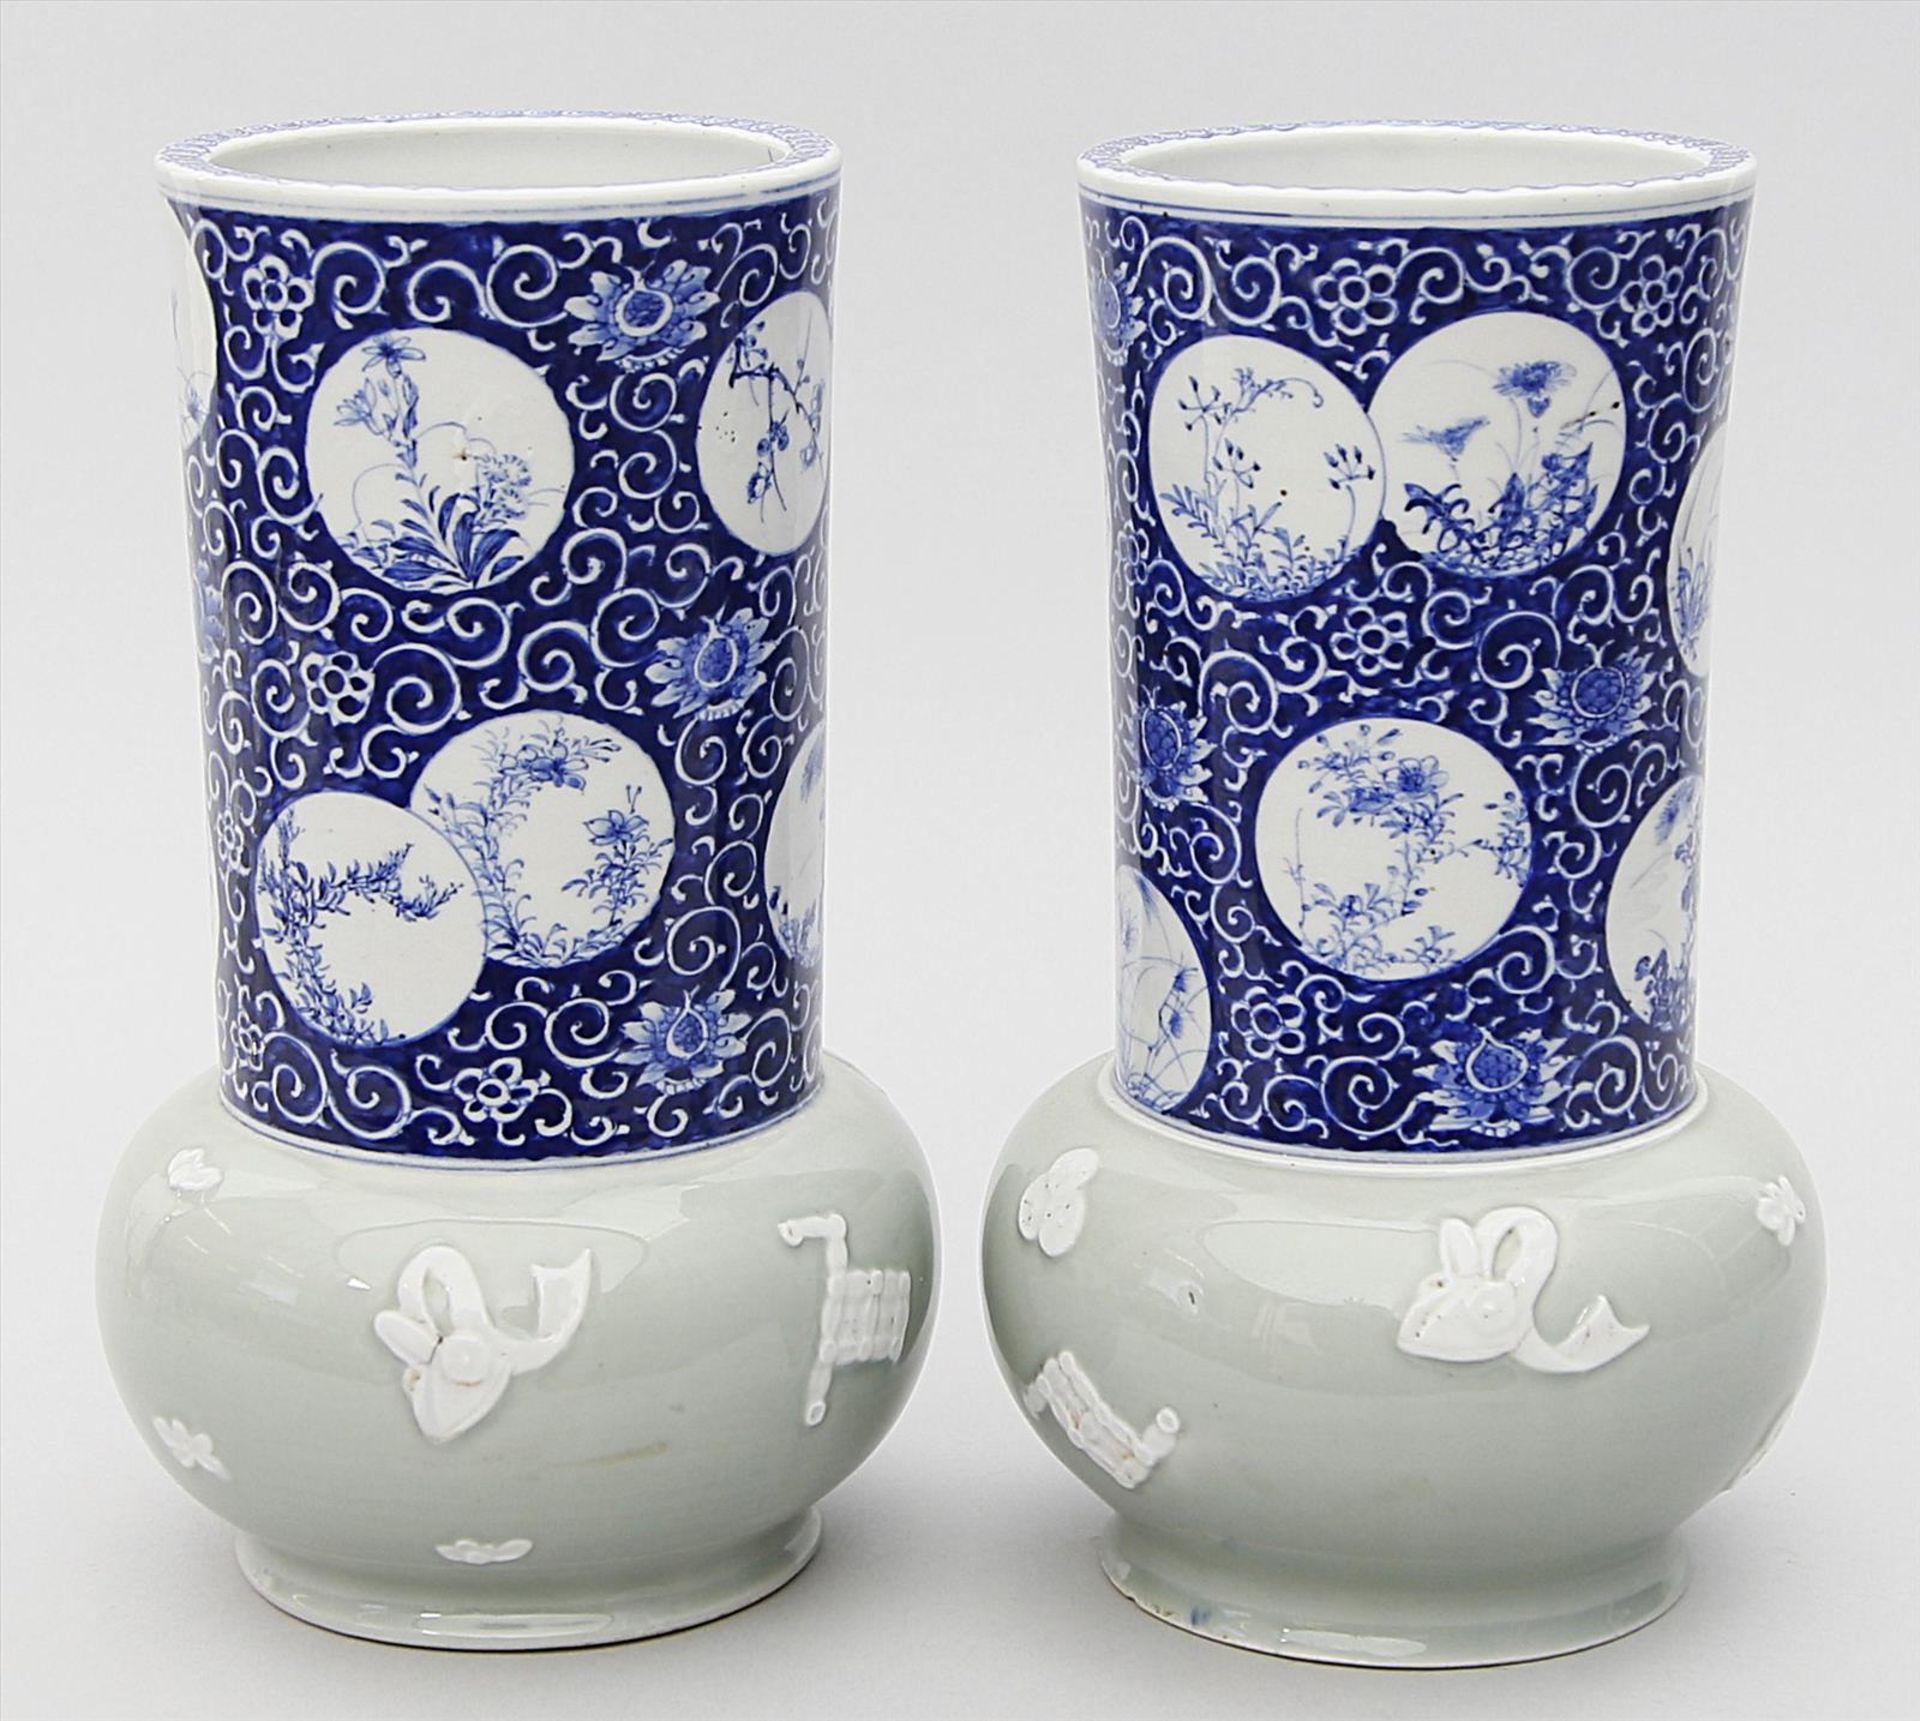 Paar Vasen.Porzellan. Gebauchte, seladonfarbene Laibung mit Reliefdekor, zylindrischer Hals mit